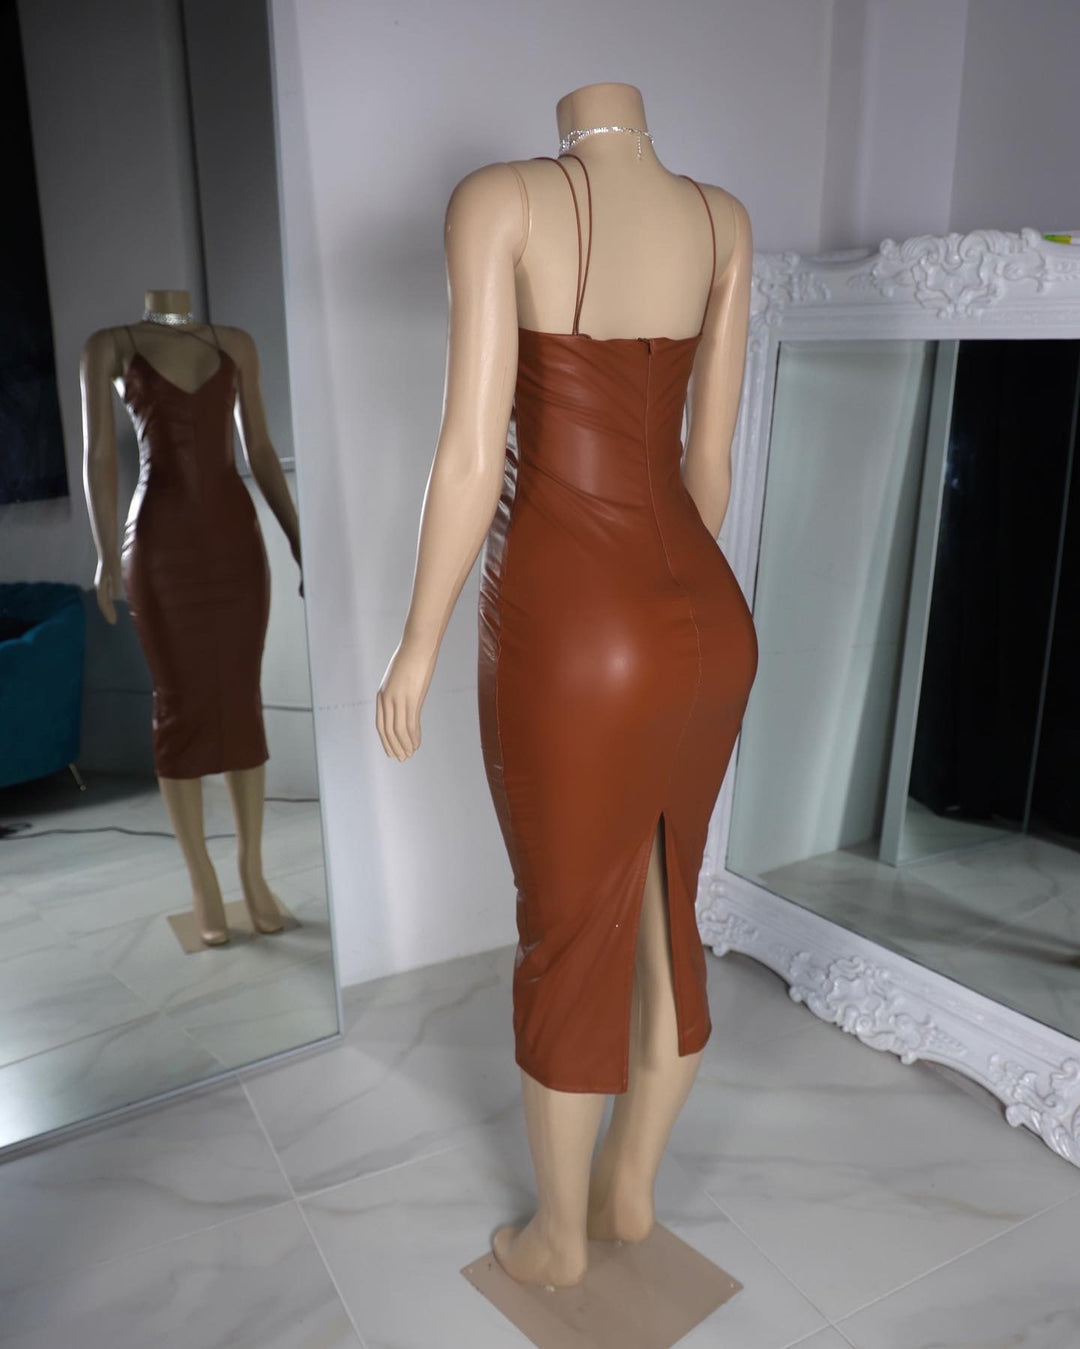 The Tara Faux Leather Dress